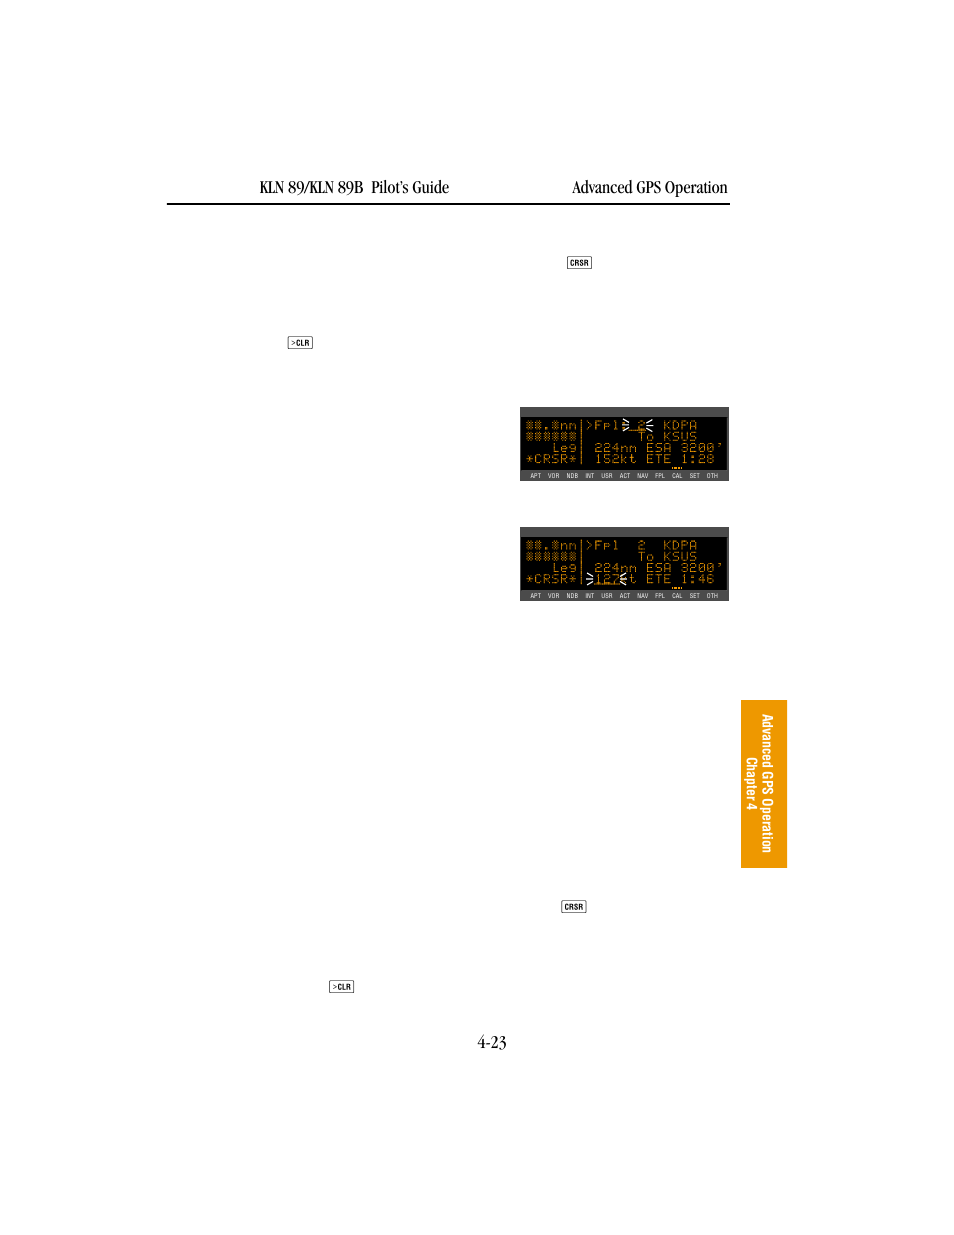 BendixKing KLN 89B - Pilots Guide User Manual | Page 134 / 246